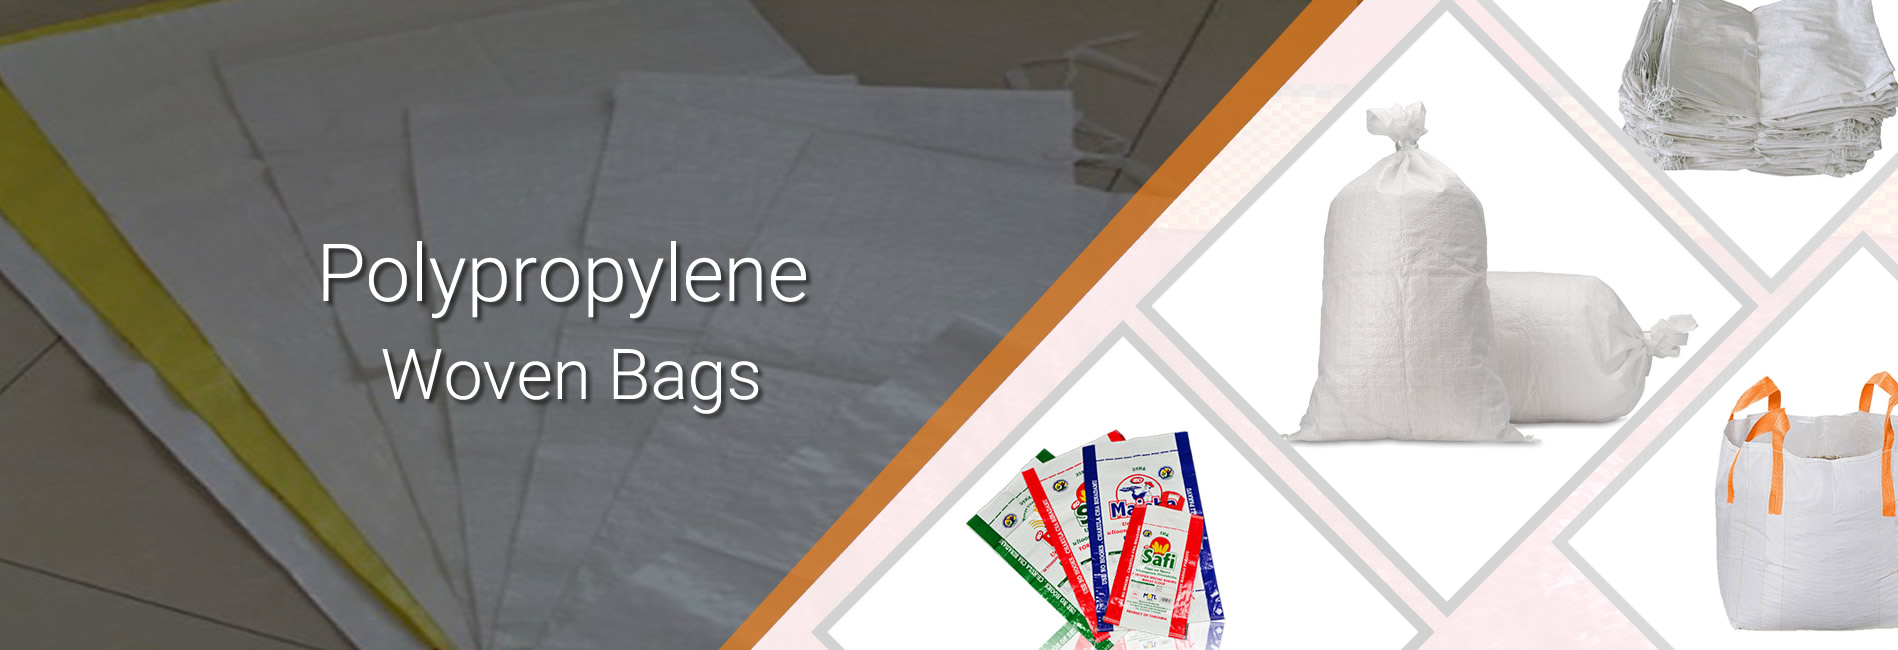 Polypropylene woven bags manufacturer